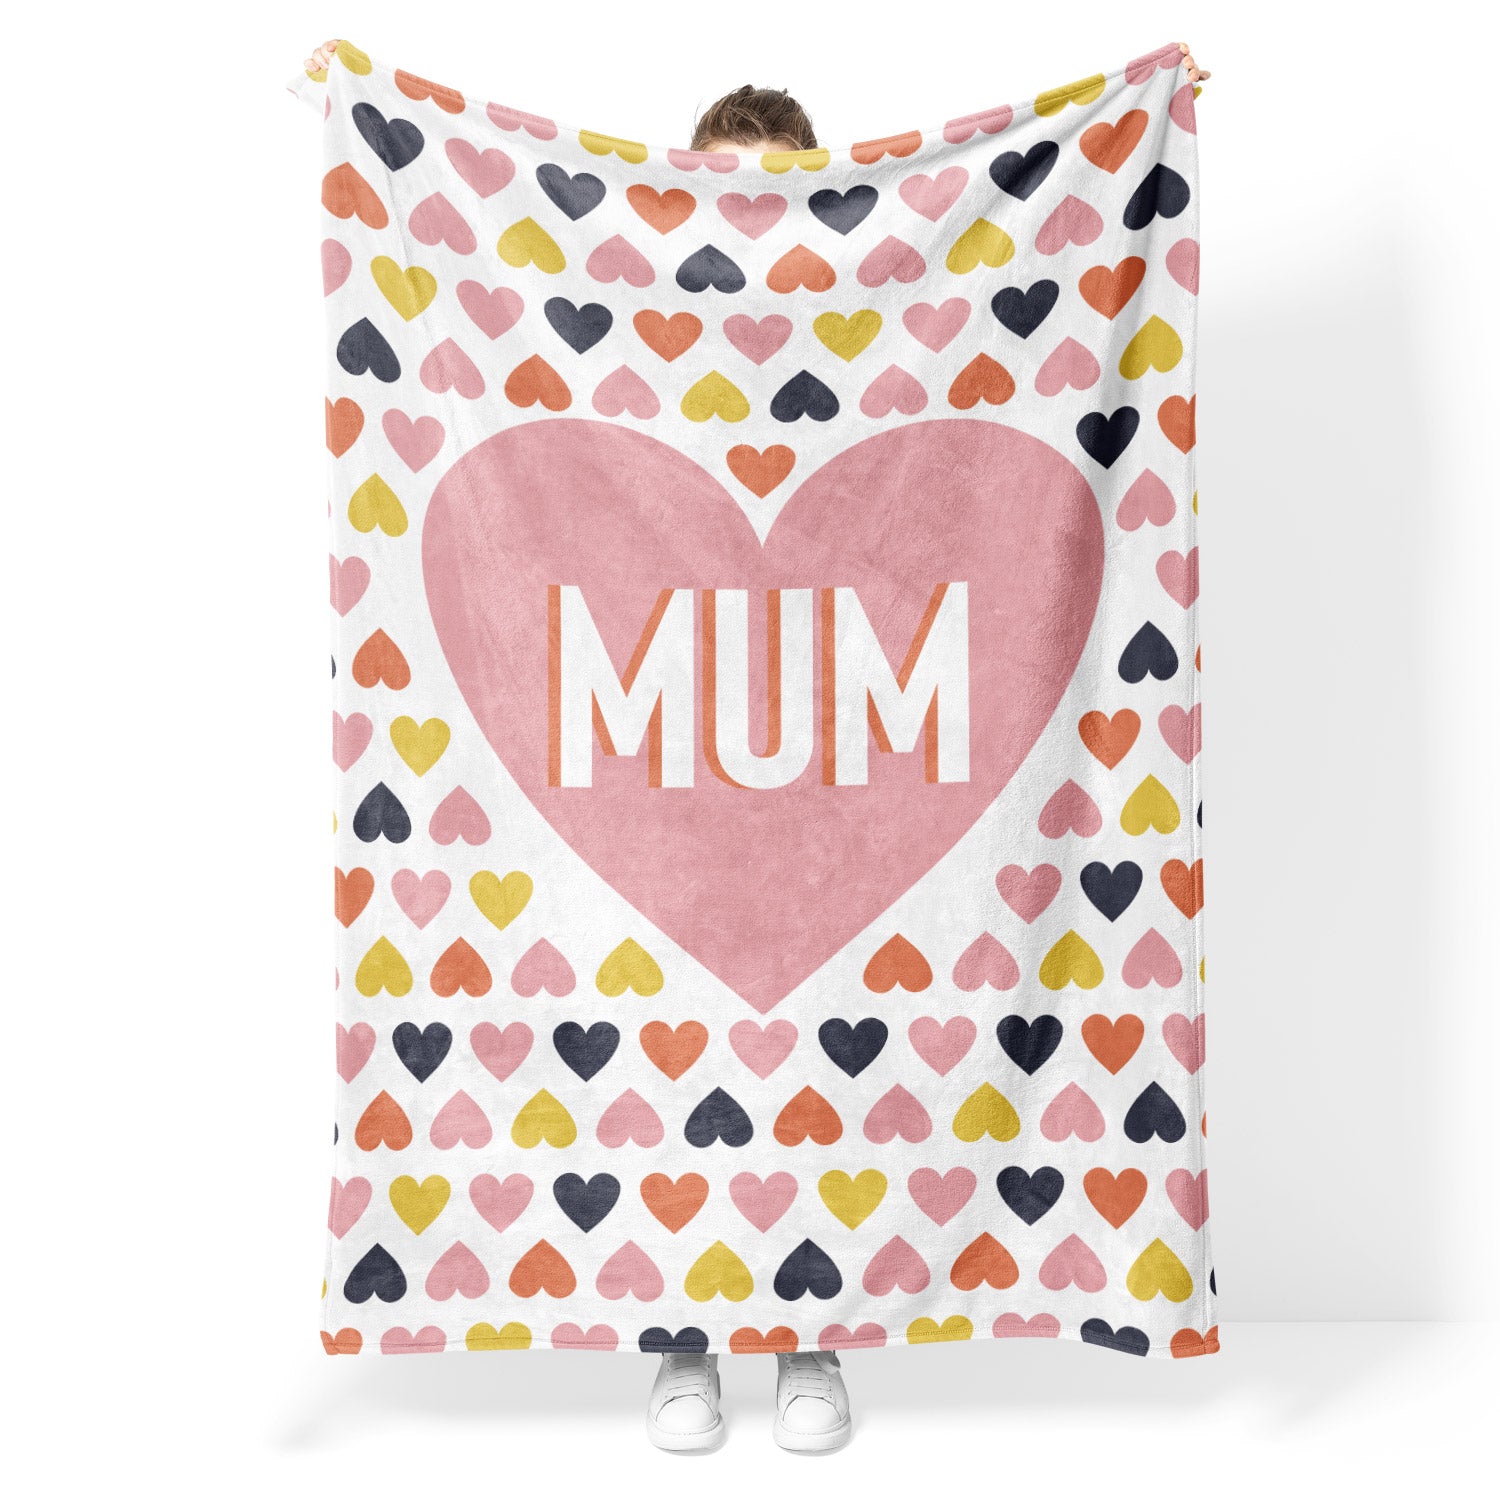 Mum Heart Fleece Blanket